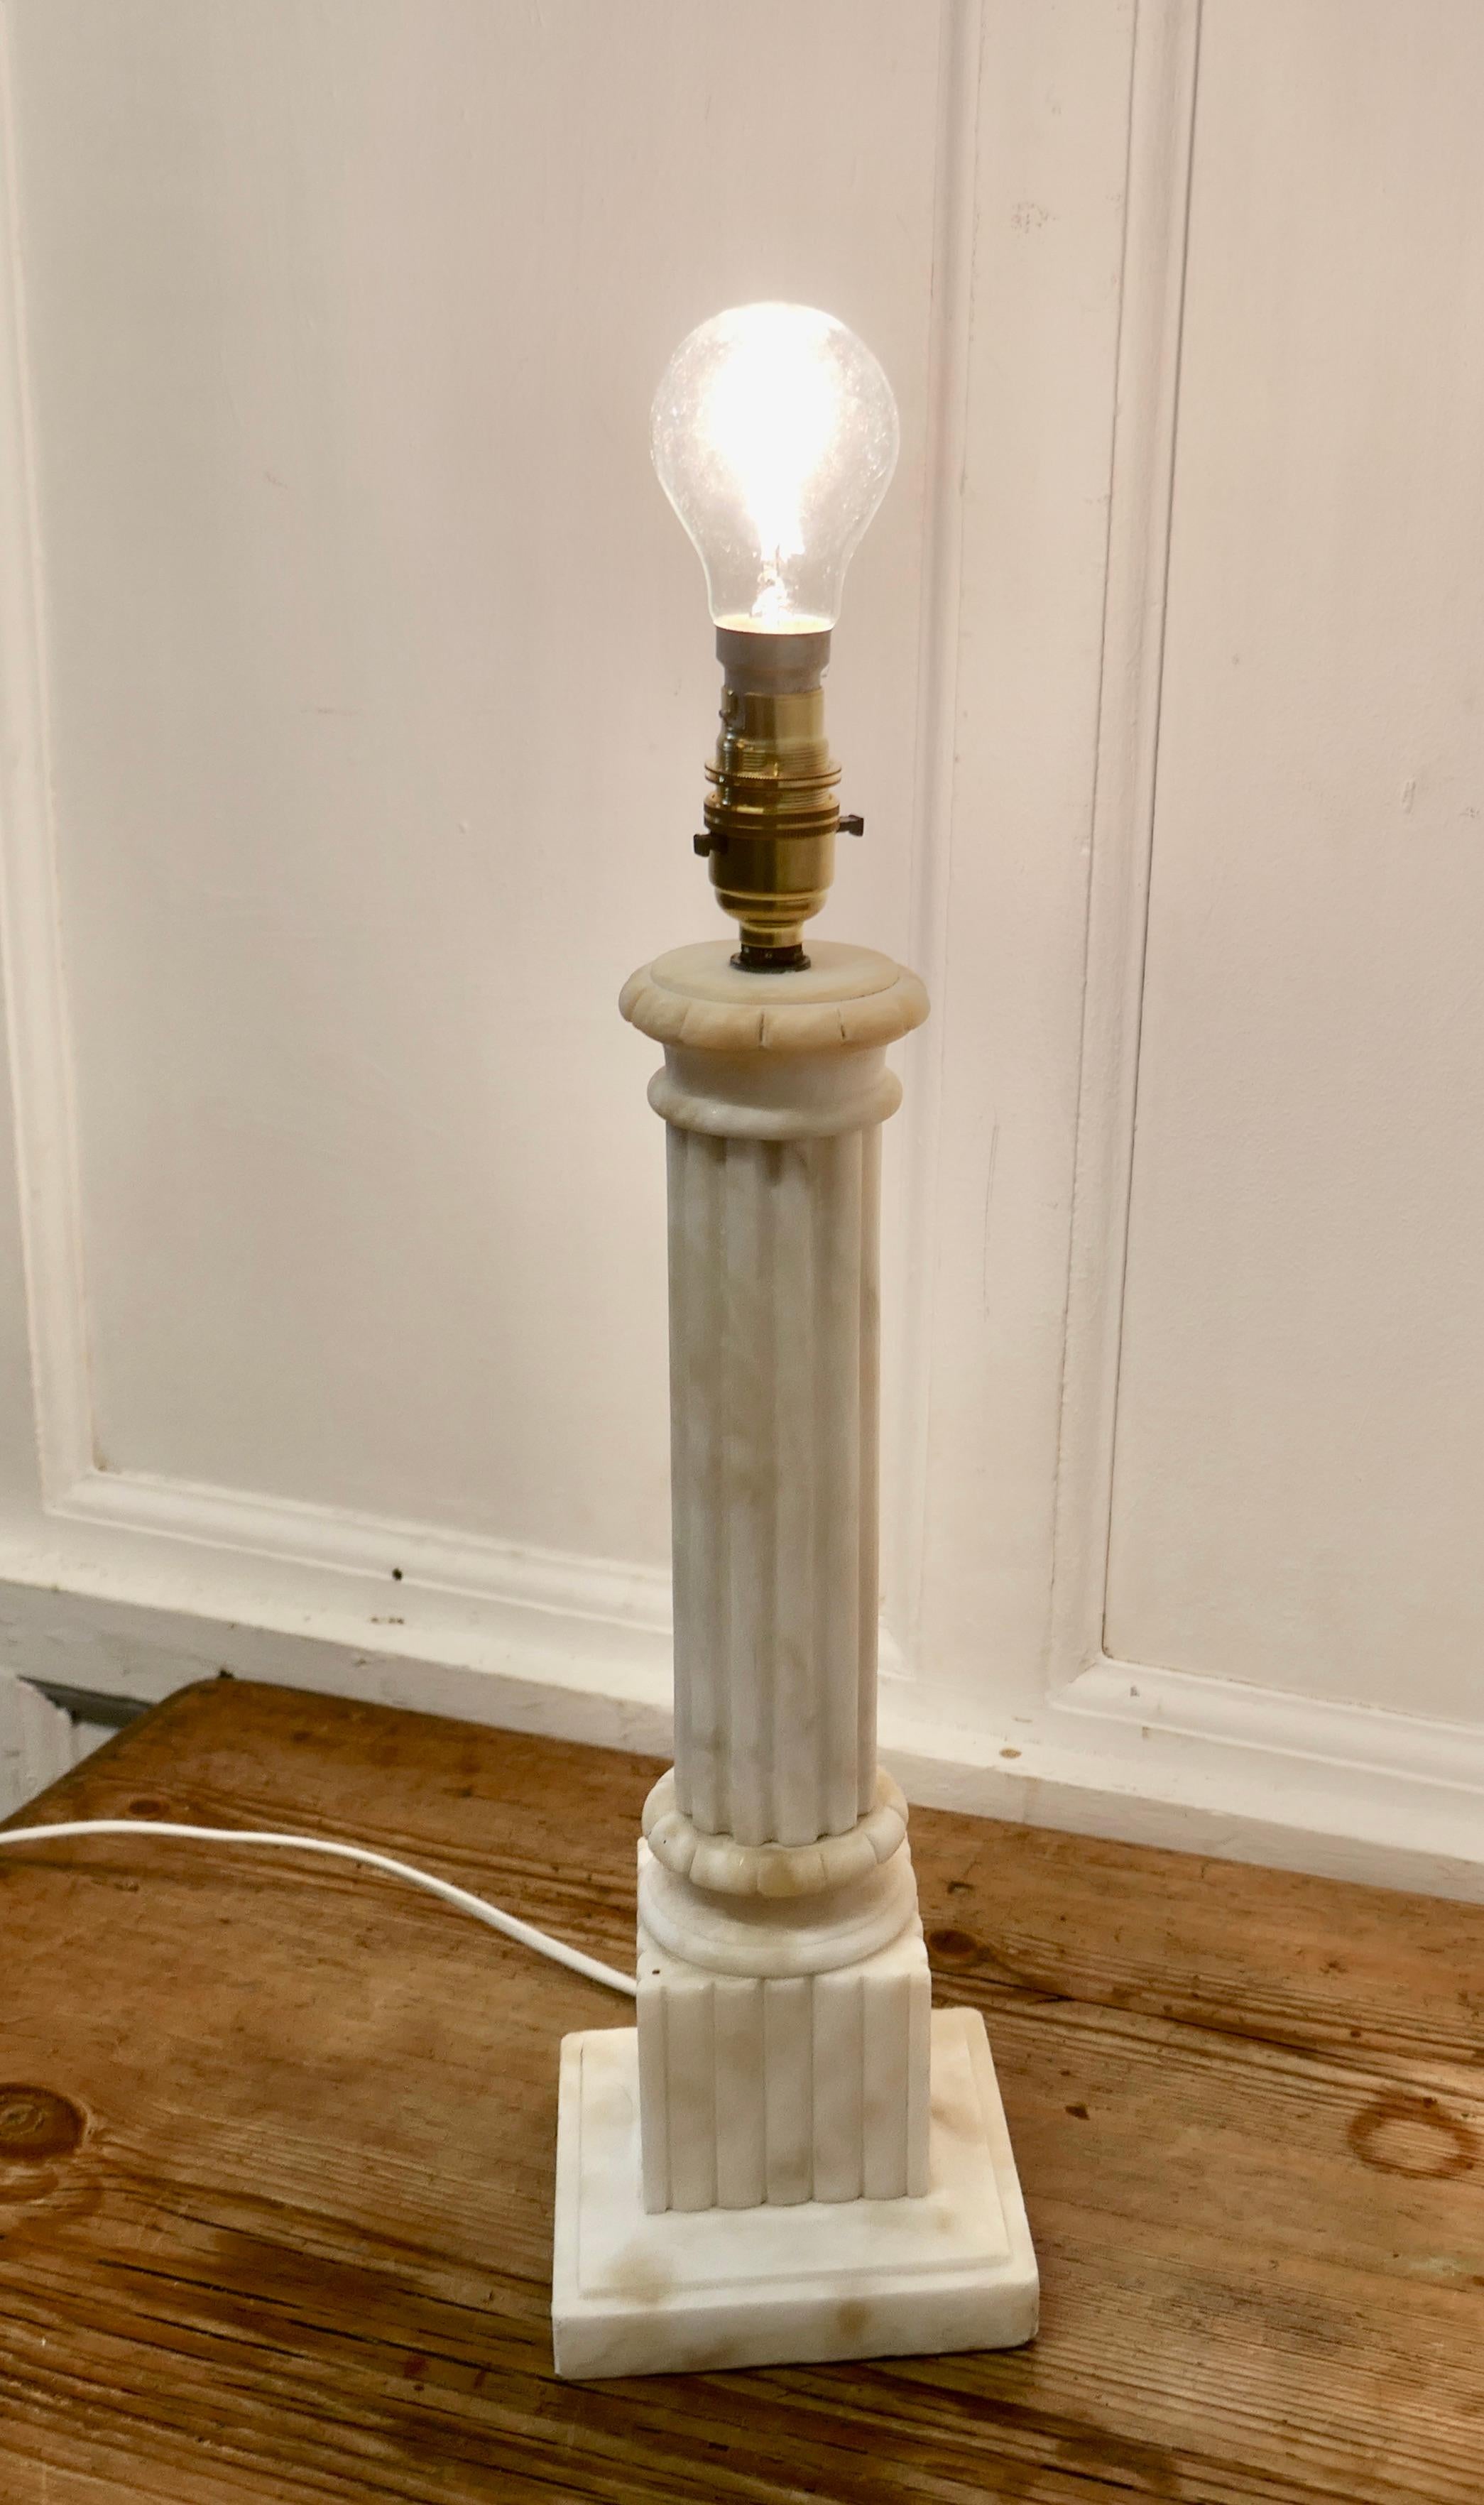 Lampe de table à colonne corinthienne en marbre blanc

Il s'agit d'une pièce lourde, réalisée en marbre massif. La lampe possède une colonne cannelée de style corinthien en marbre, posée sur une base en marbre.
Il s'agit d'une pièce très